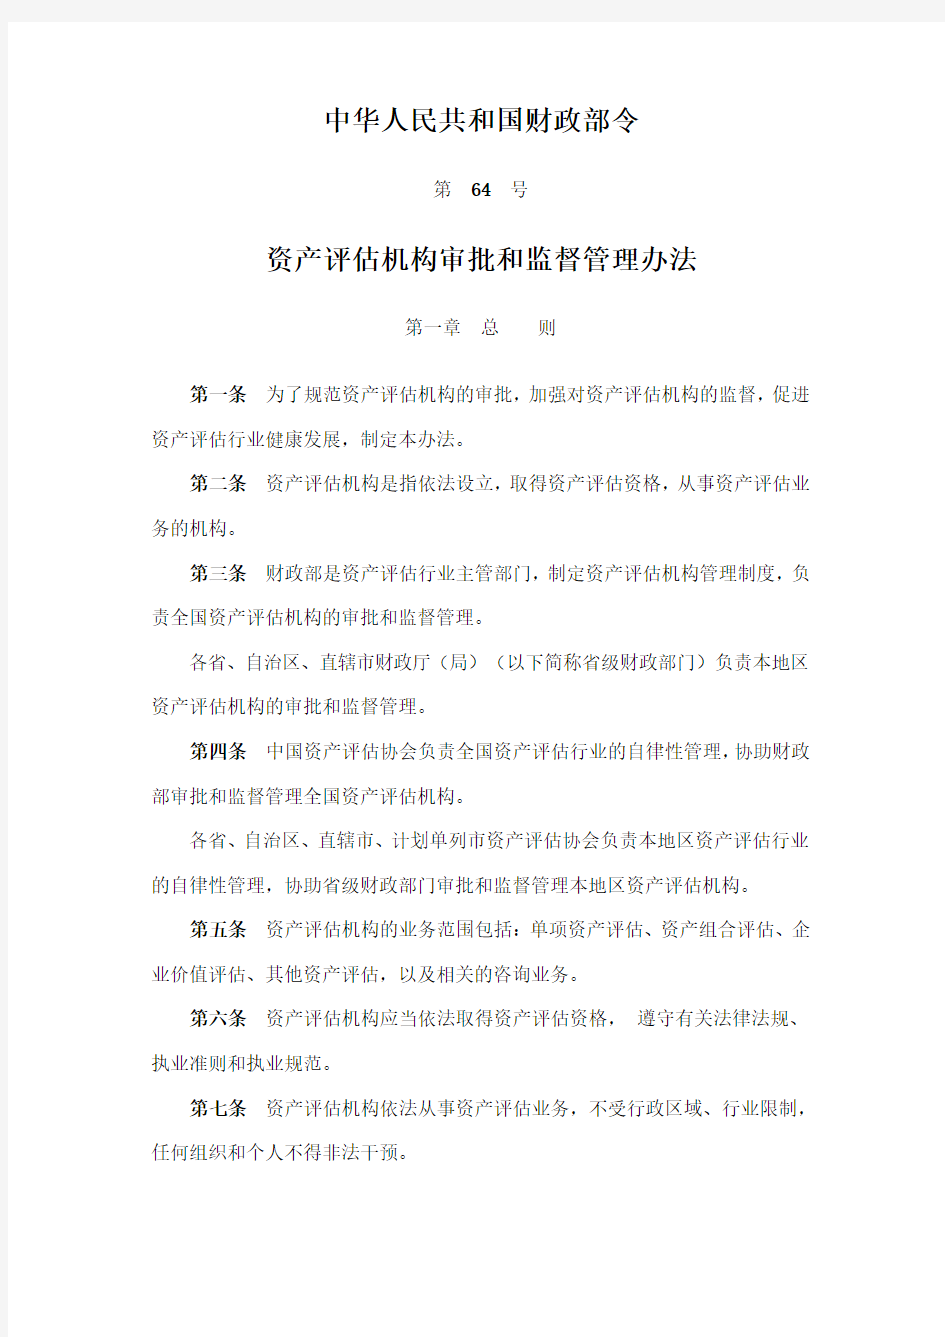 中华人民共和国财政部令第64号-资产评估机构审批和监督管理办法